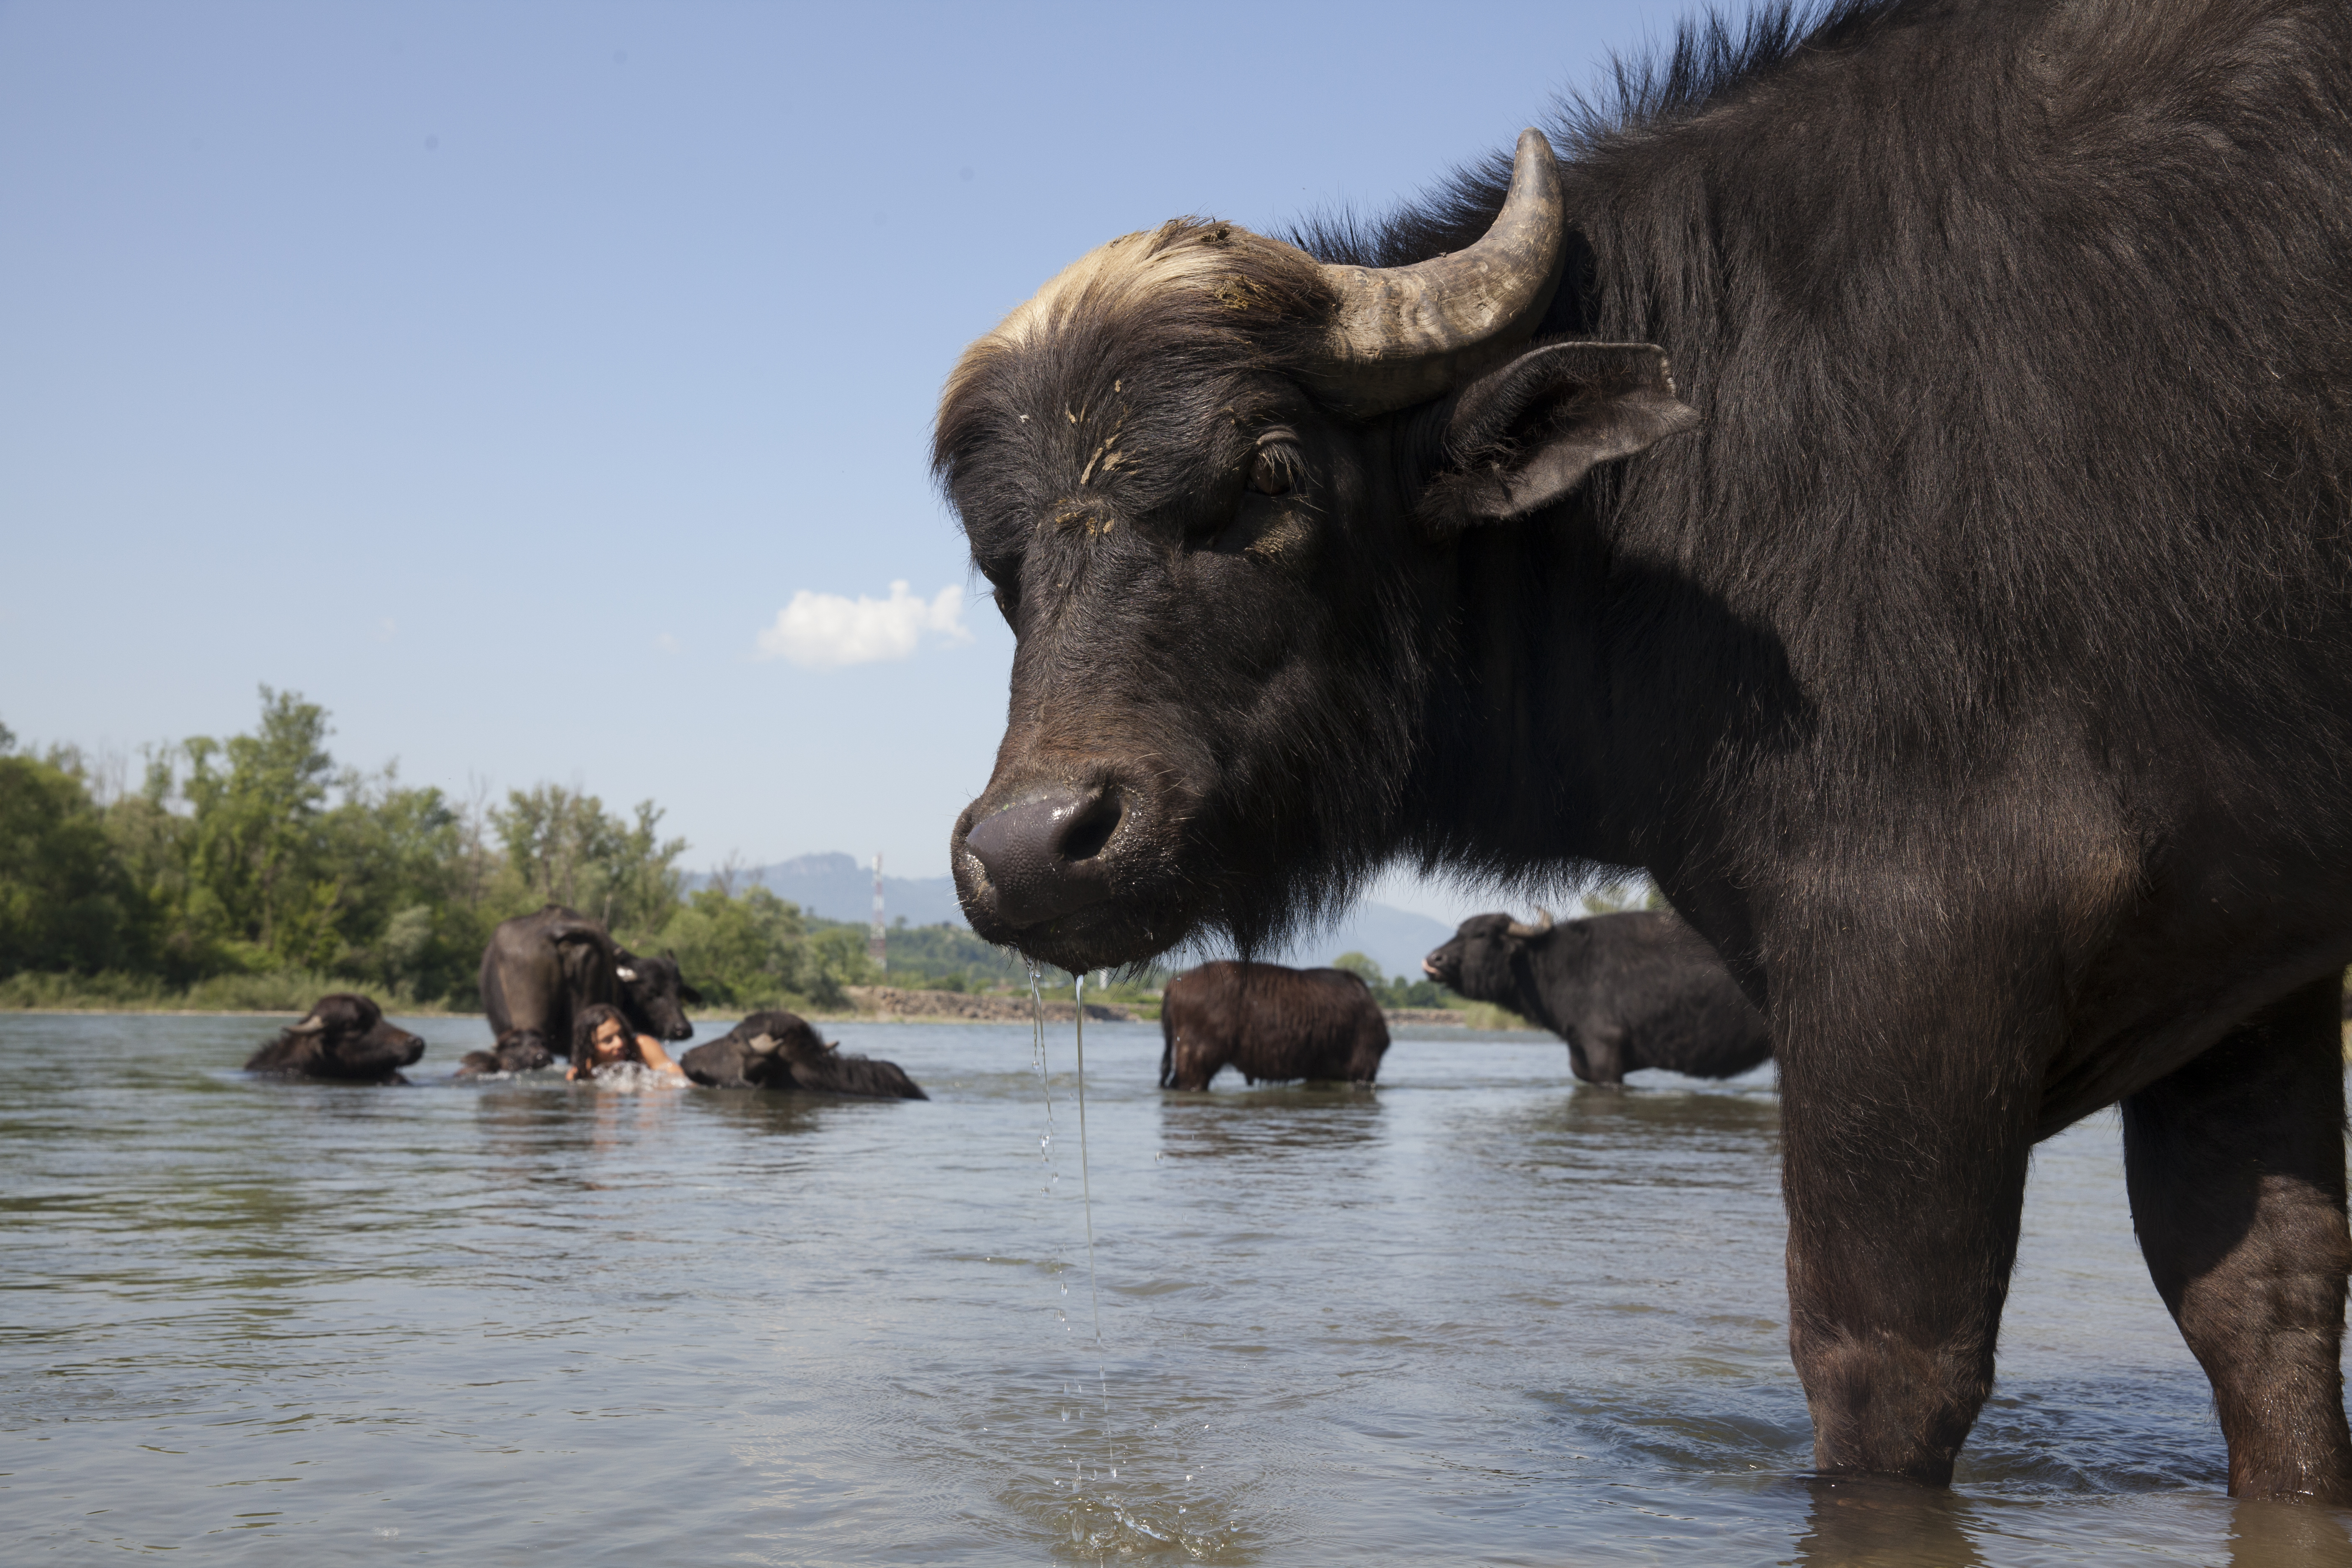 Фільм про німця Мішеля та його карпатських буйволів «Май далеко, май добре» вийшов онлайн